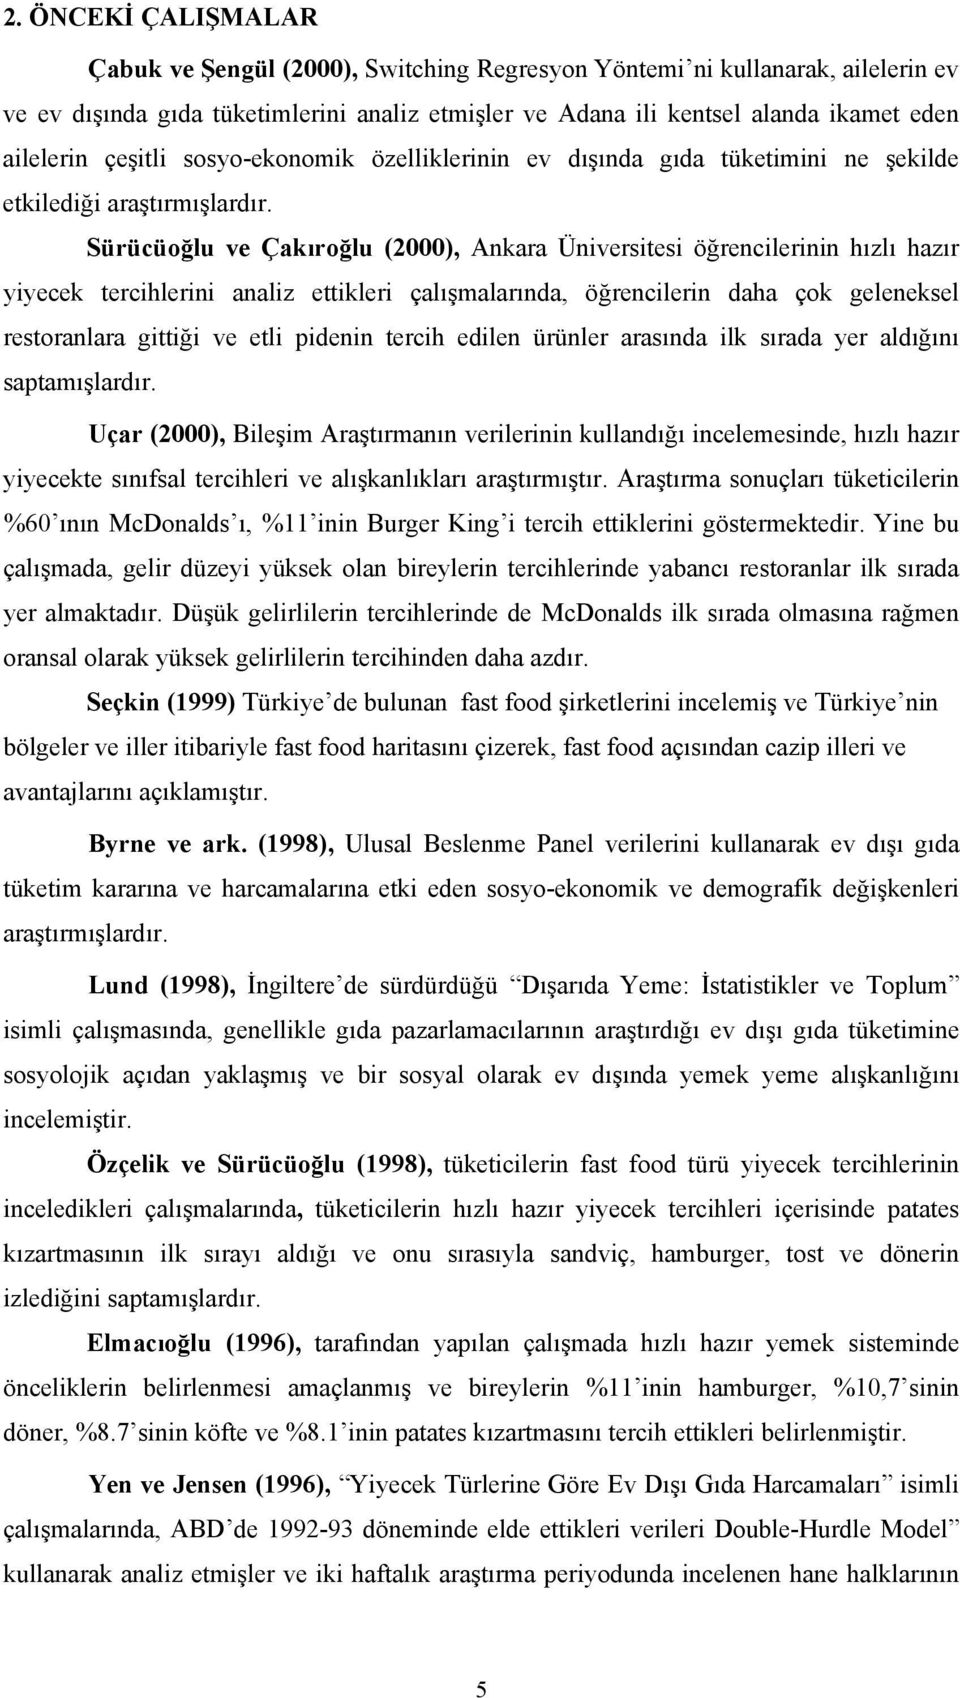 Sürücüoğlu ve Çakıroğlu (2000), Ankara Üniversitesi öğrencilerinin hızlı hazır yiyecek tercihlerini analiz ettikleri çalışmalarında, öğrencilerin daha çok geleneksel restoranlara gittiği ve etli